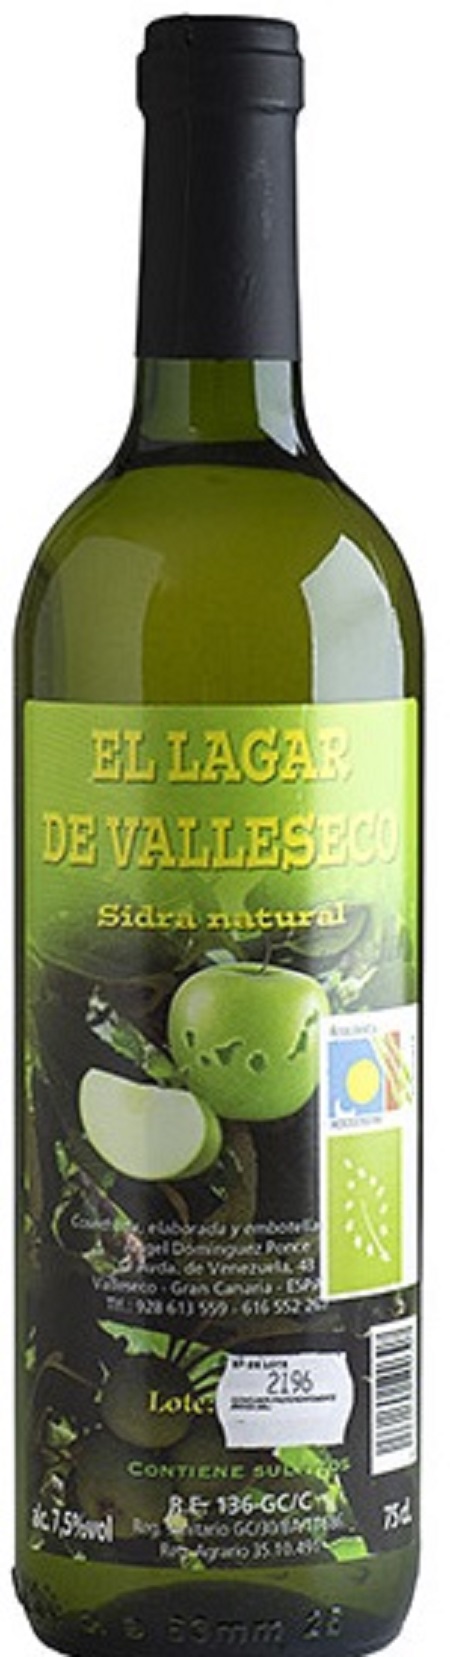 el-lagar-de-valleseco-sidra-natural-